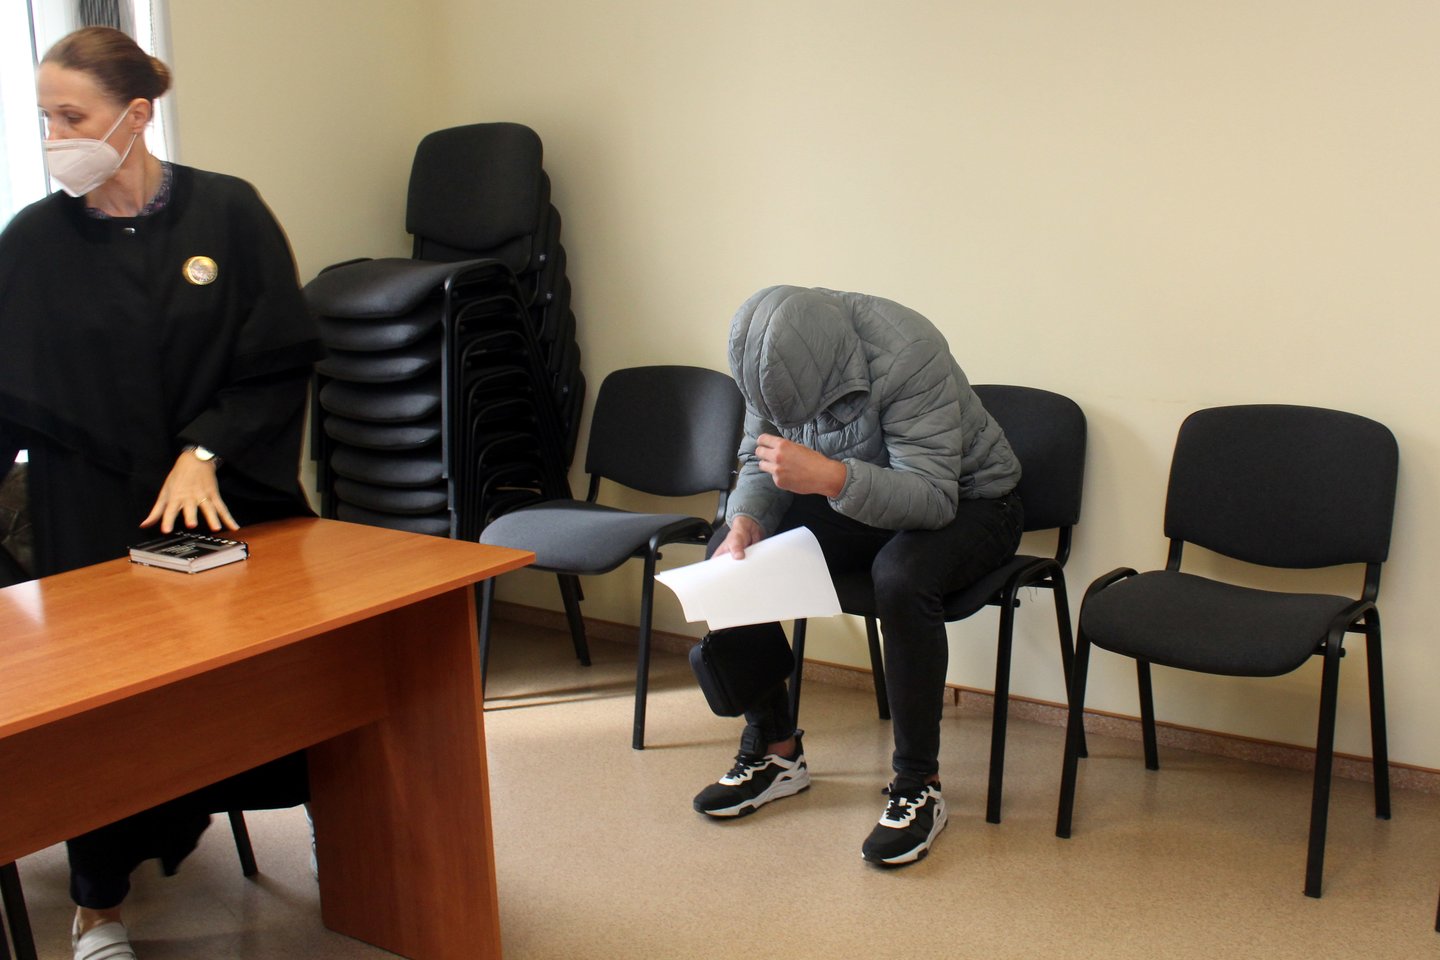  Kyšį policijos pareigūnui siūlęs A.Petrosijanas teisme kaip įmanydamas slėpė veidą.<br> R.Vitkaus nuotr.